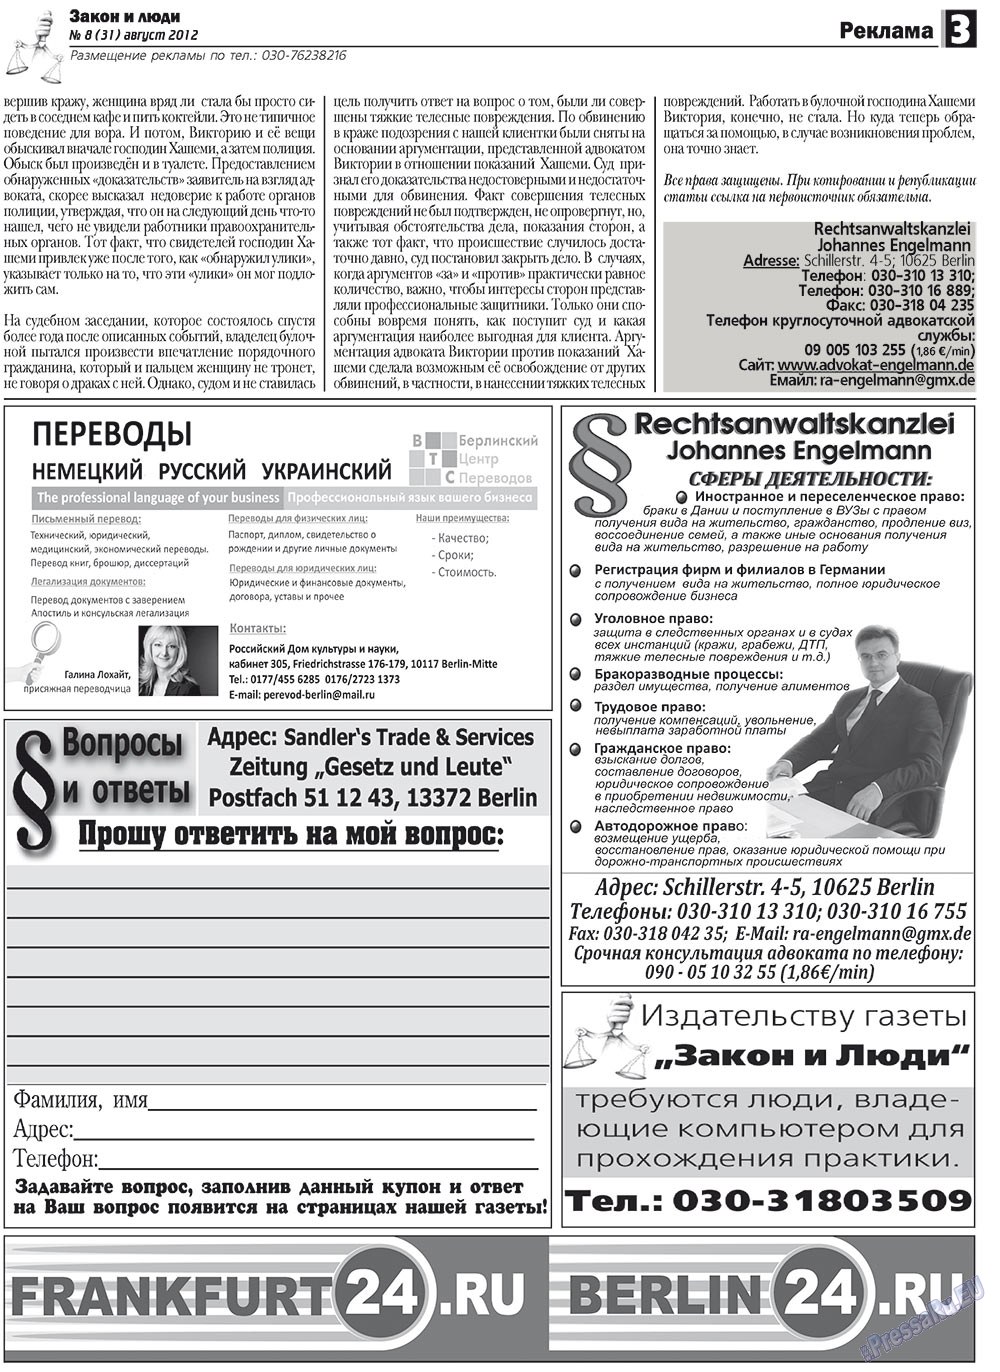 Закон и люди, газета. 2012 №8 стр.3